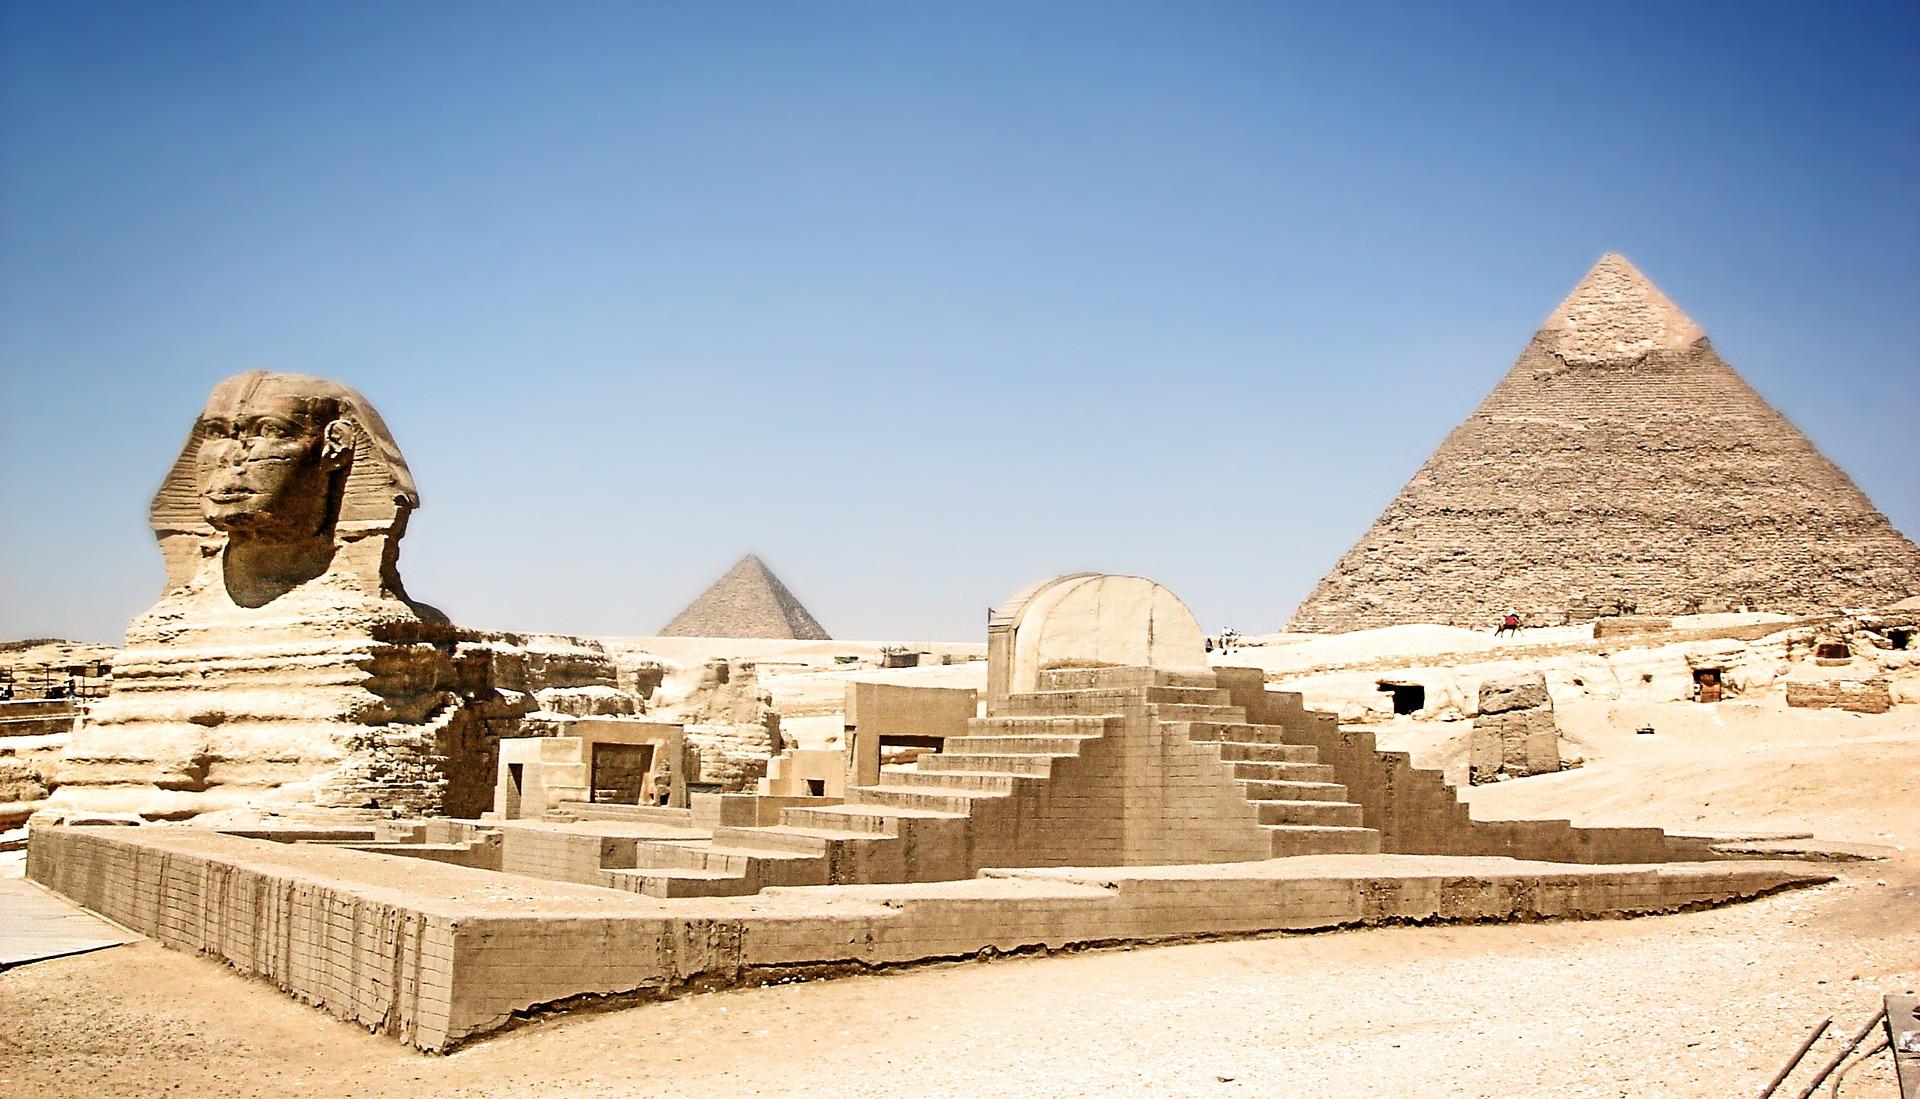 古埃及金字塔中找到微量炭黑,专家推断,修建金字塔时用了沼气灯